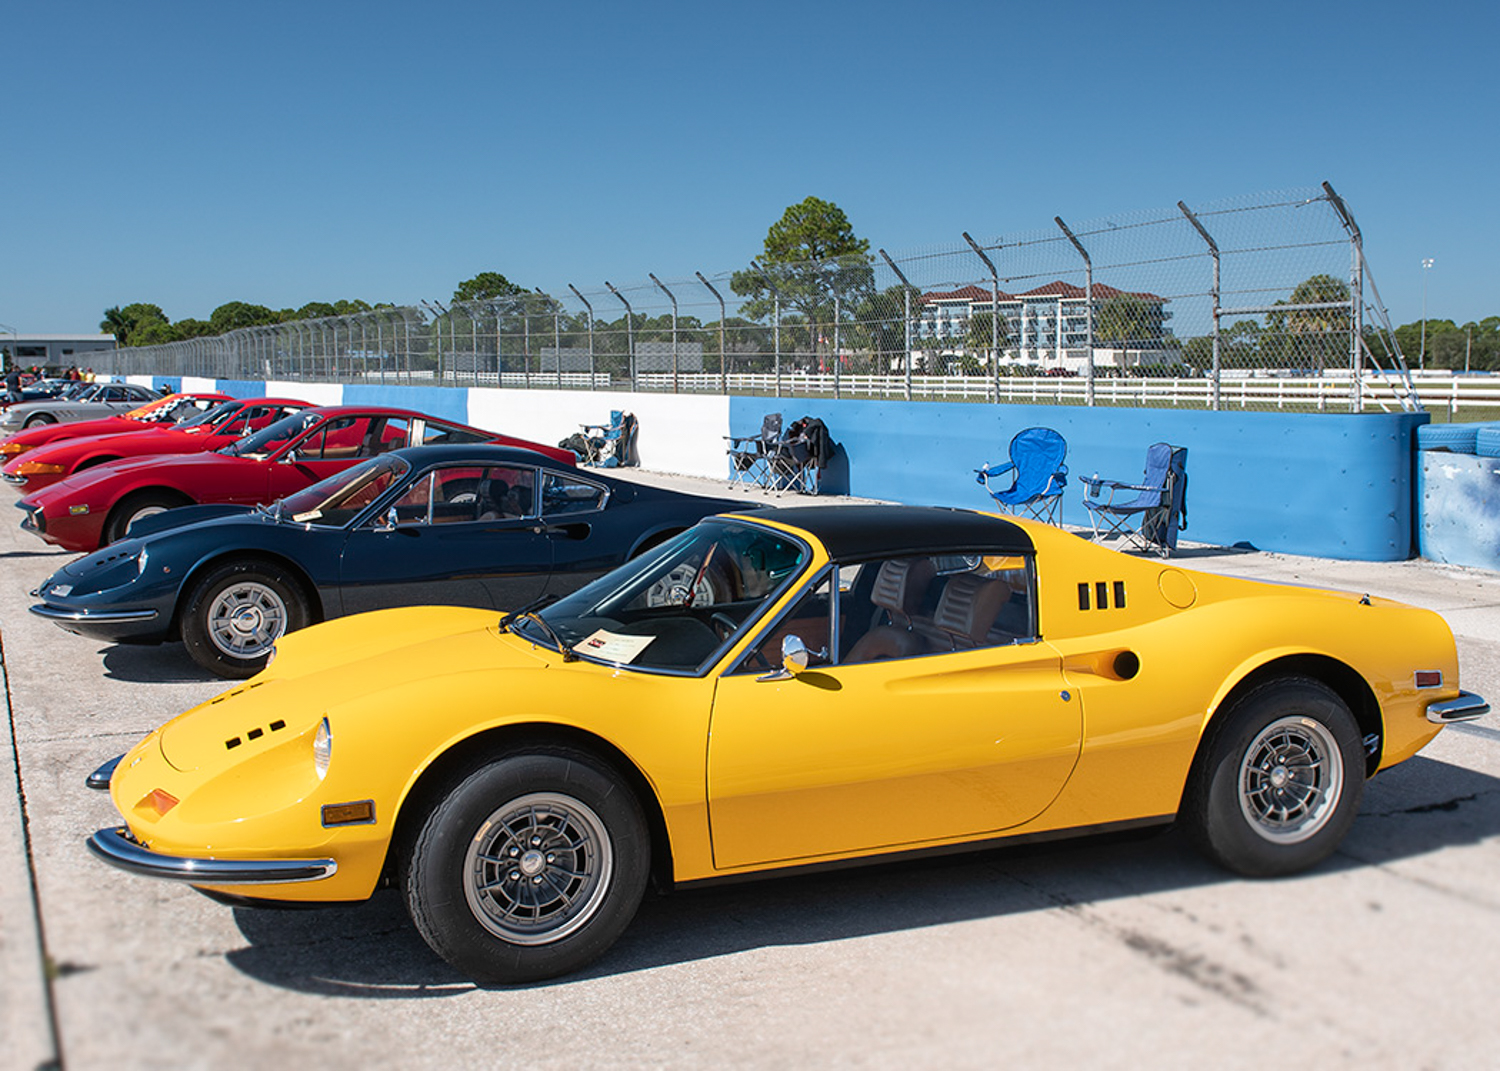 1971 Ferrari Dino 246 GTS ser# 077461970 Ferrari Dino 246 GTS ser# 01016 Chuck Andersen